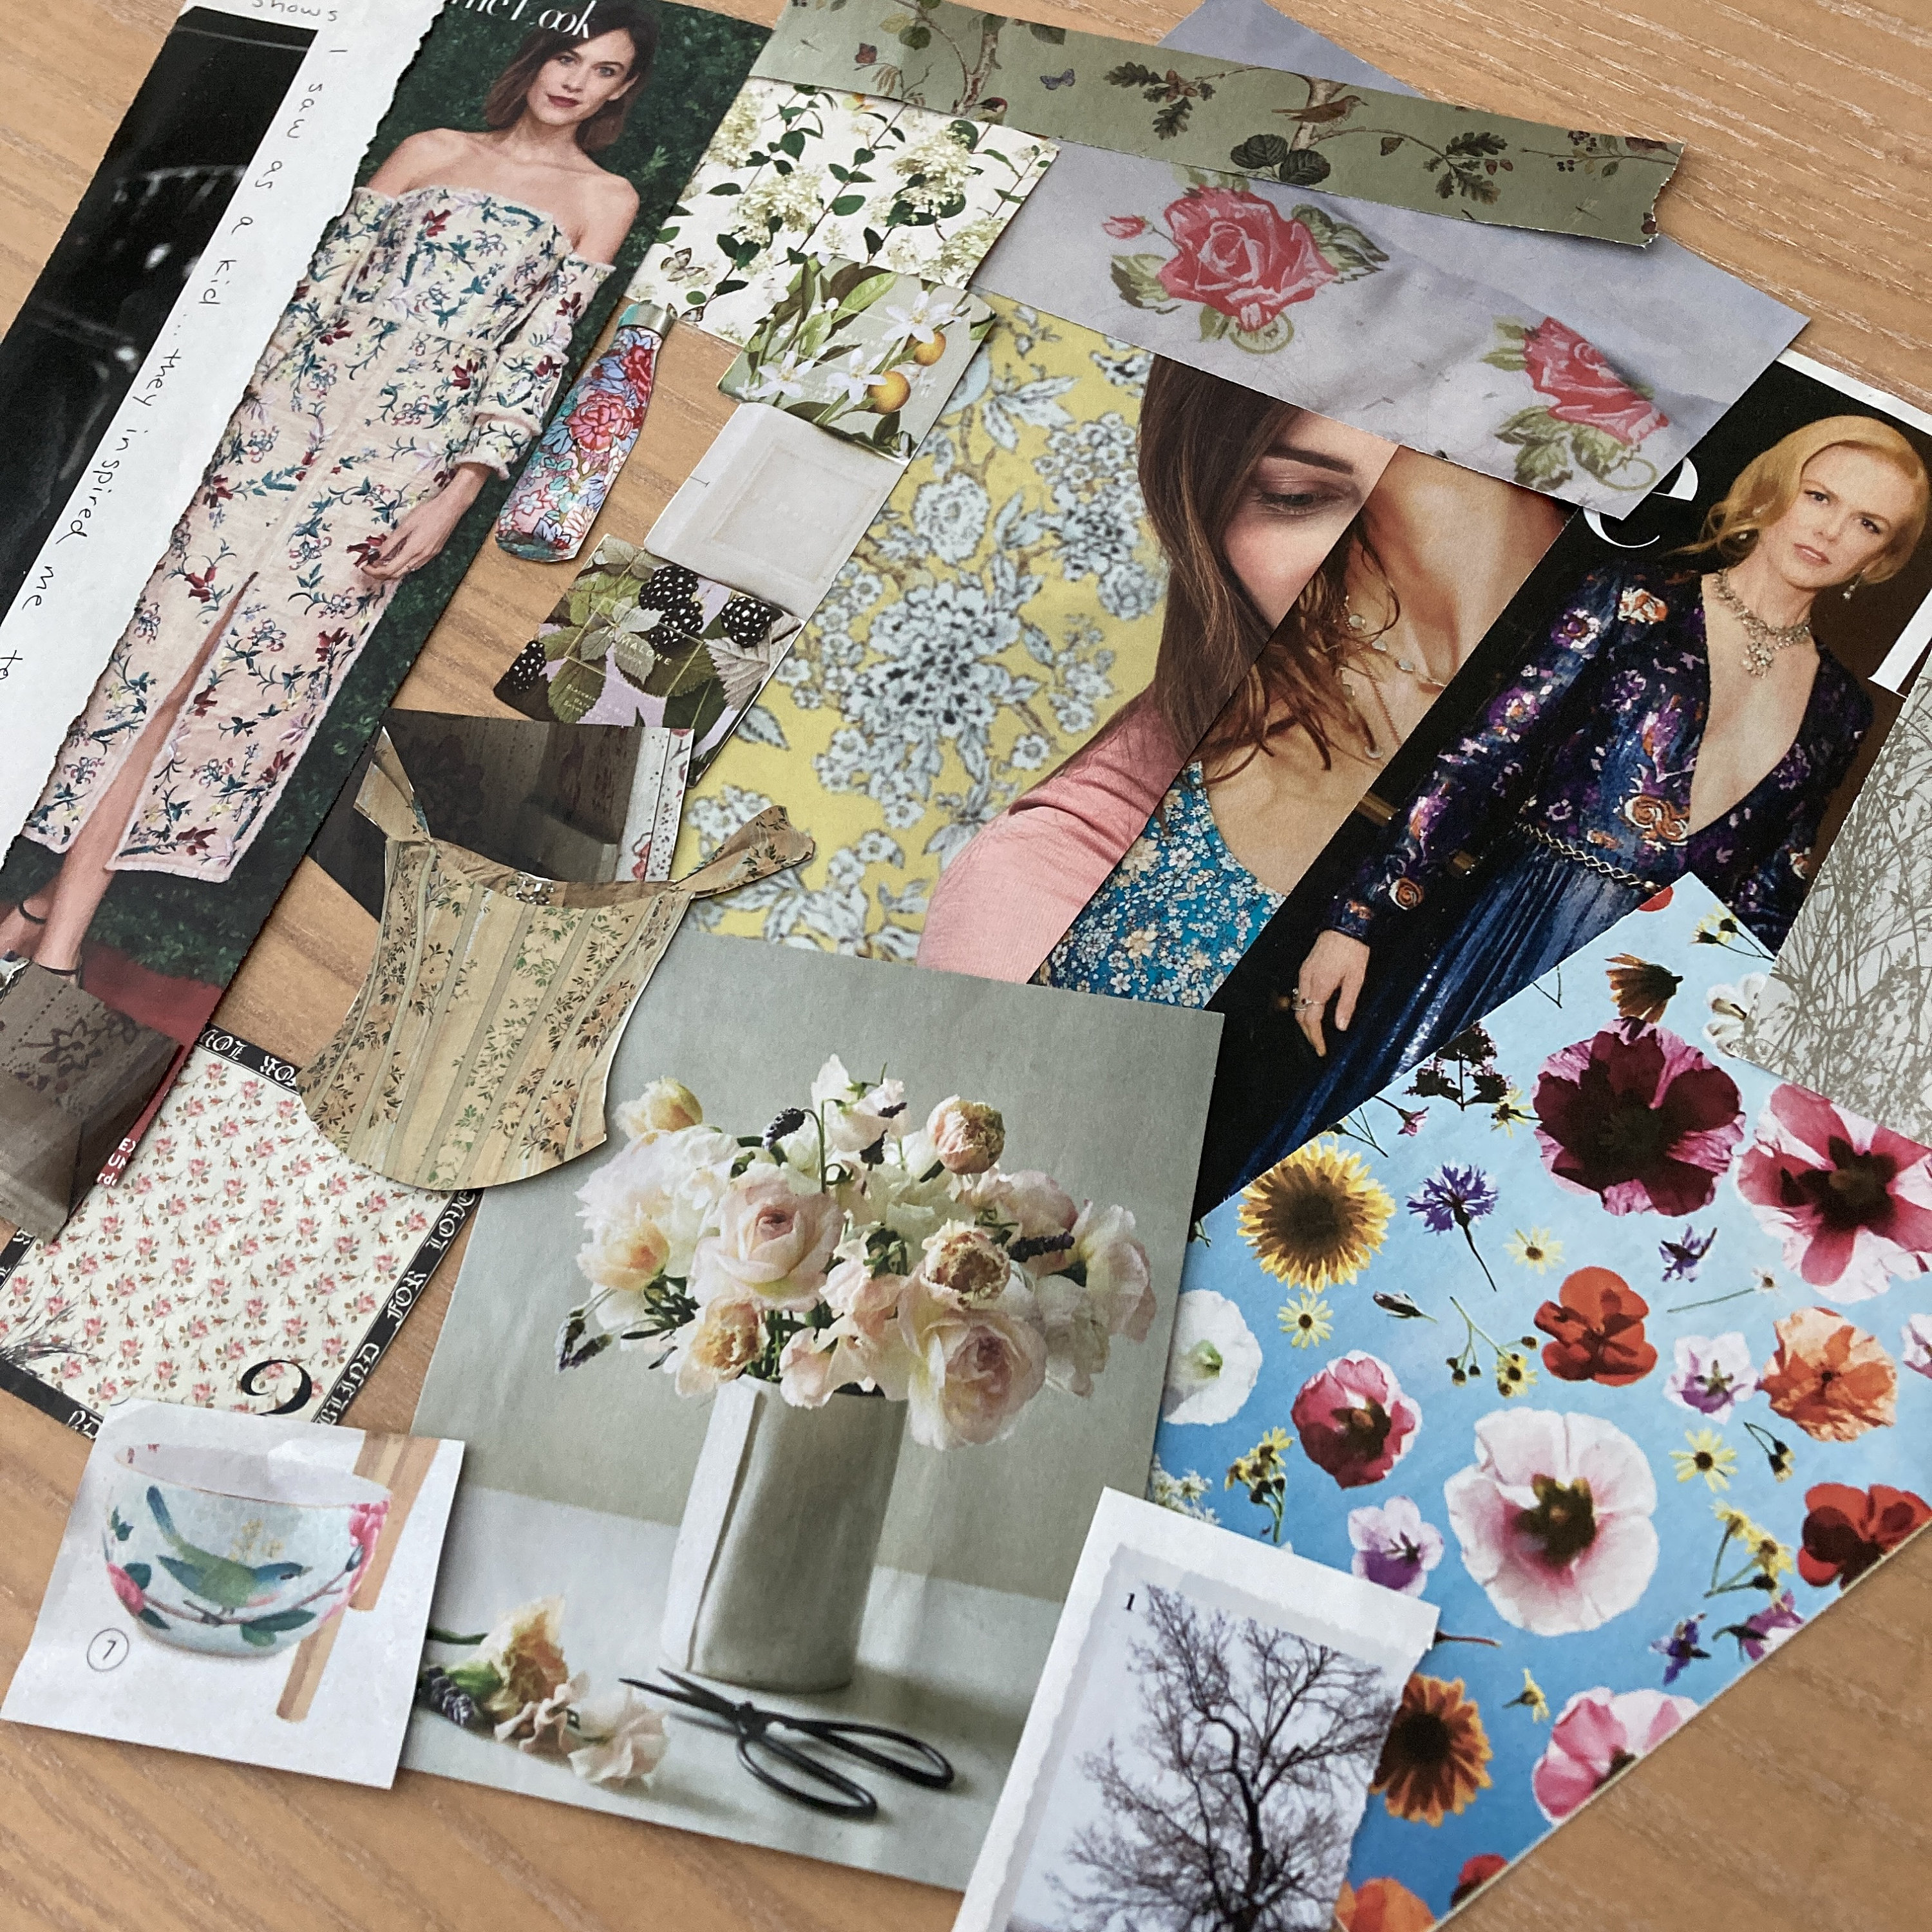 100+ Beauty & Fashion Magazine Photo Clippings Junk Journal Collage Art  Ephemera